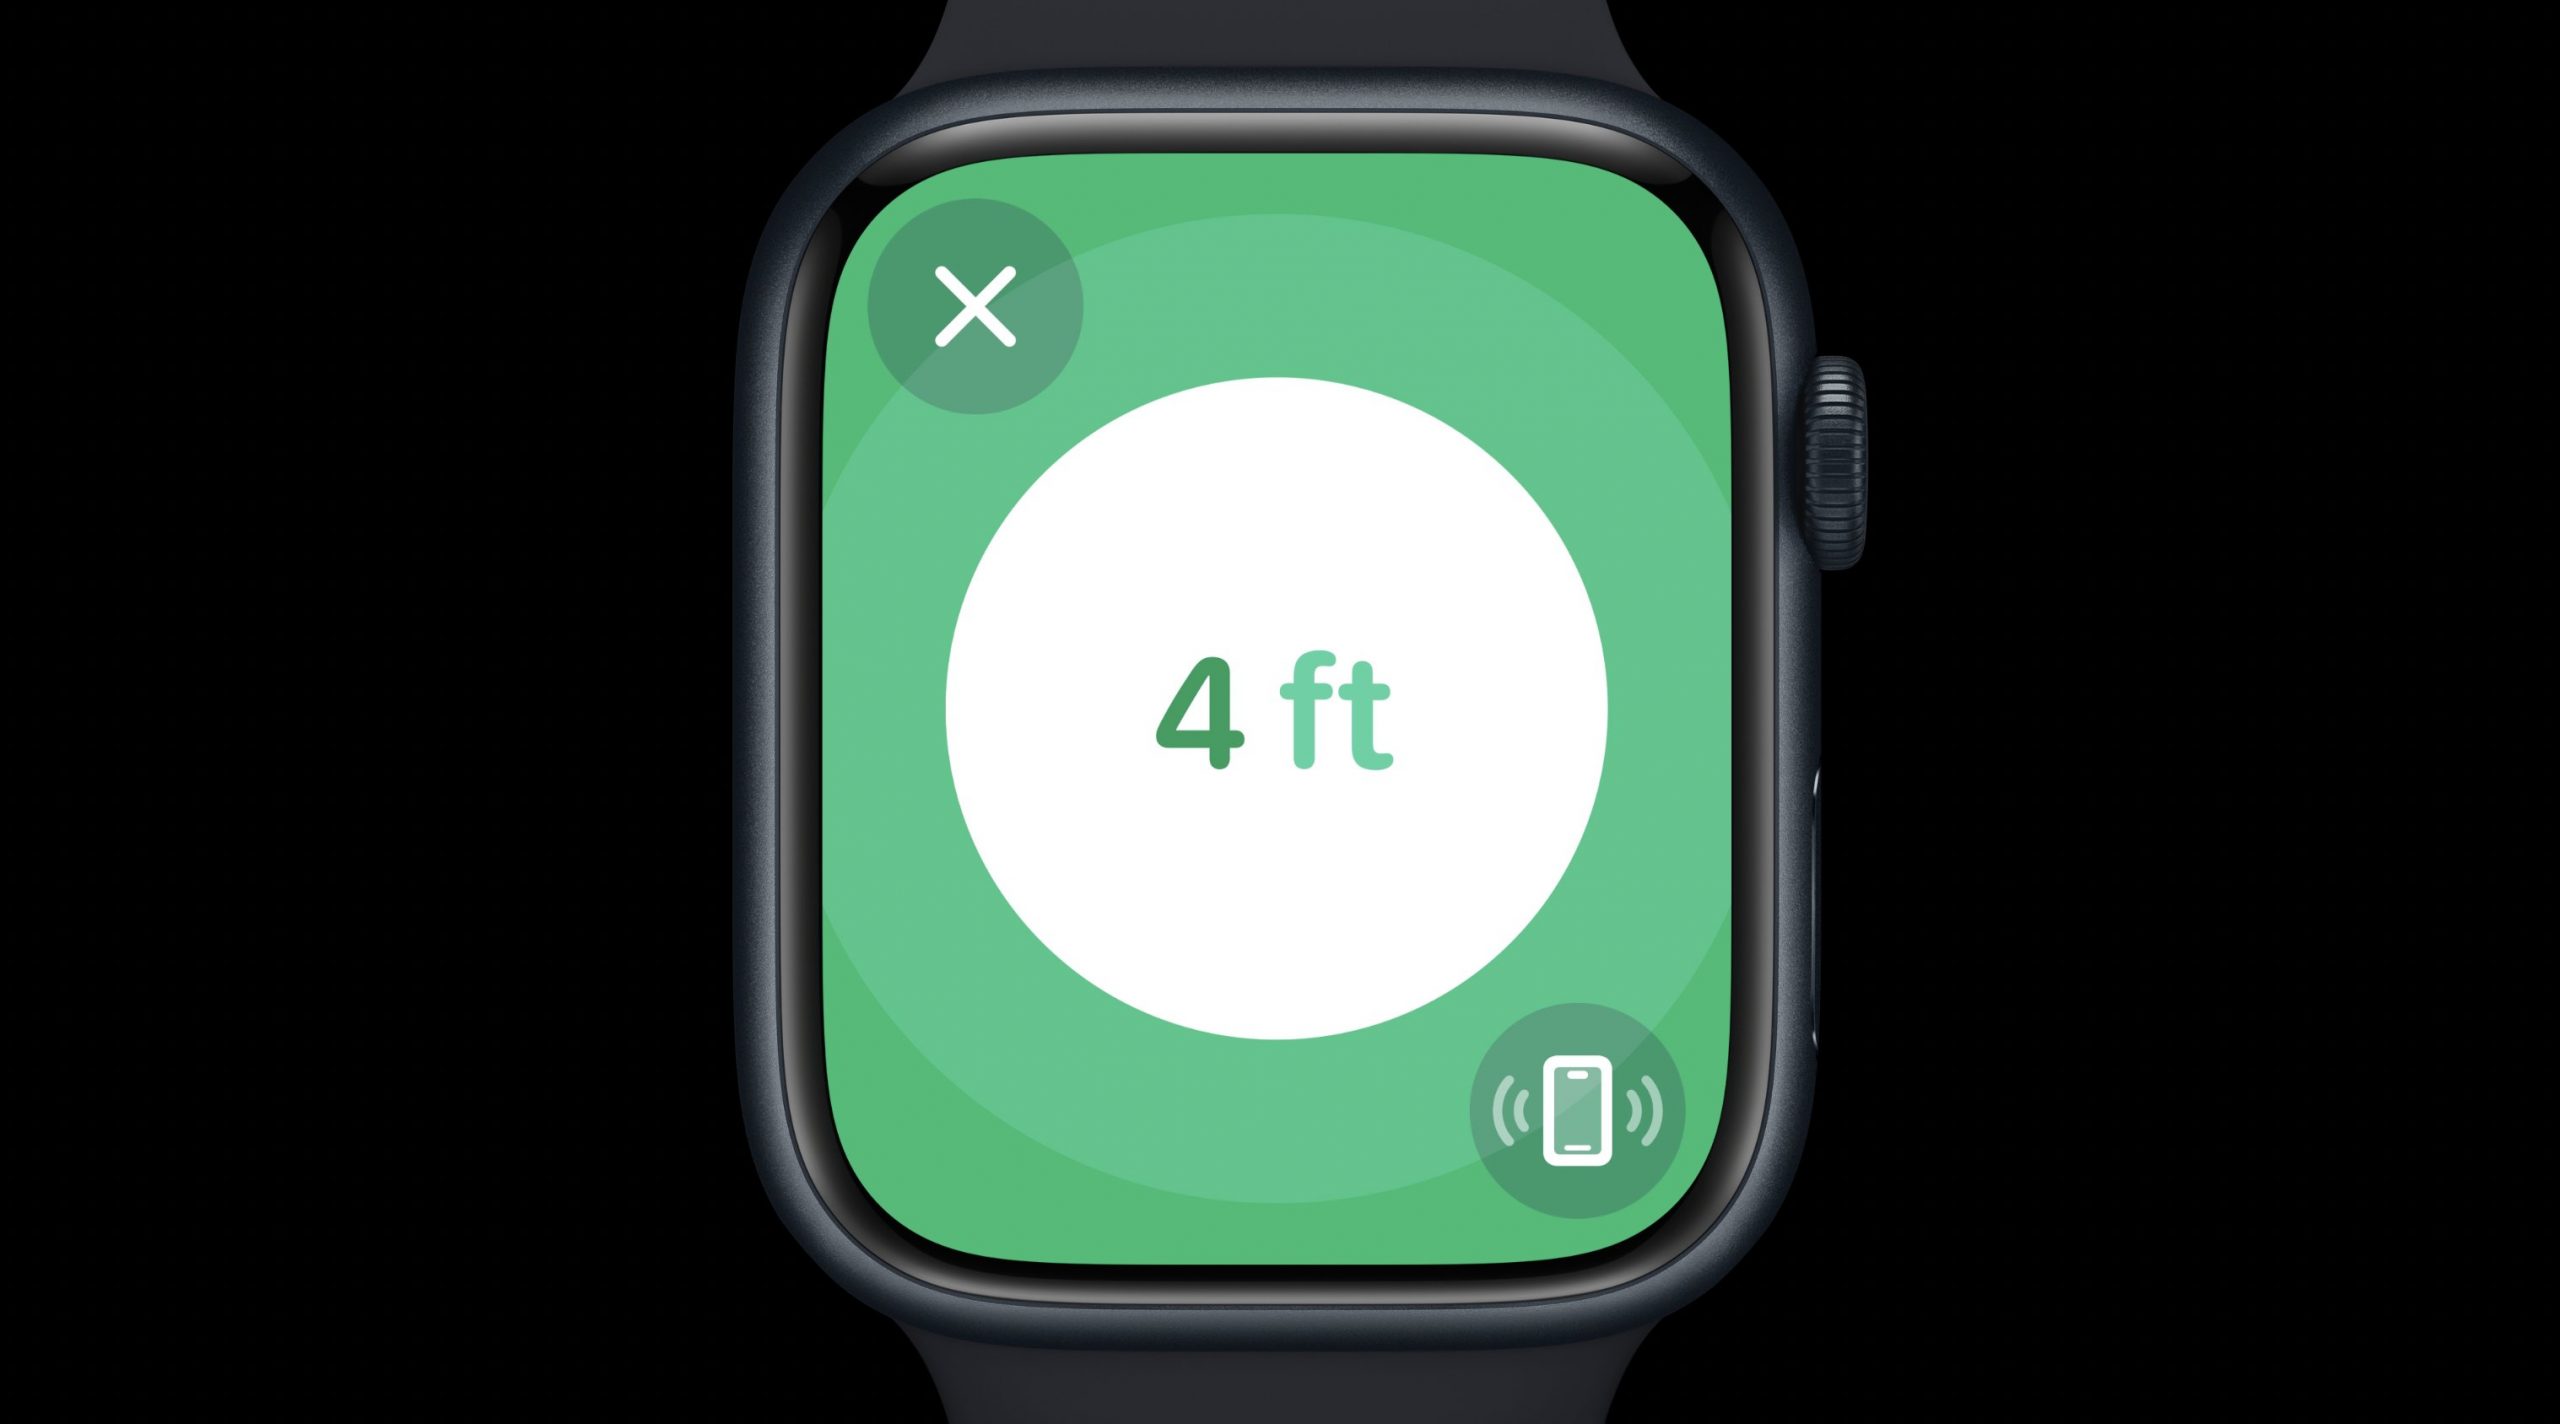 Mostrando la distancia al objeto que se busca en el Apple Watch, gracias al chip U2 Ultra Wideband